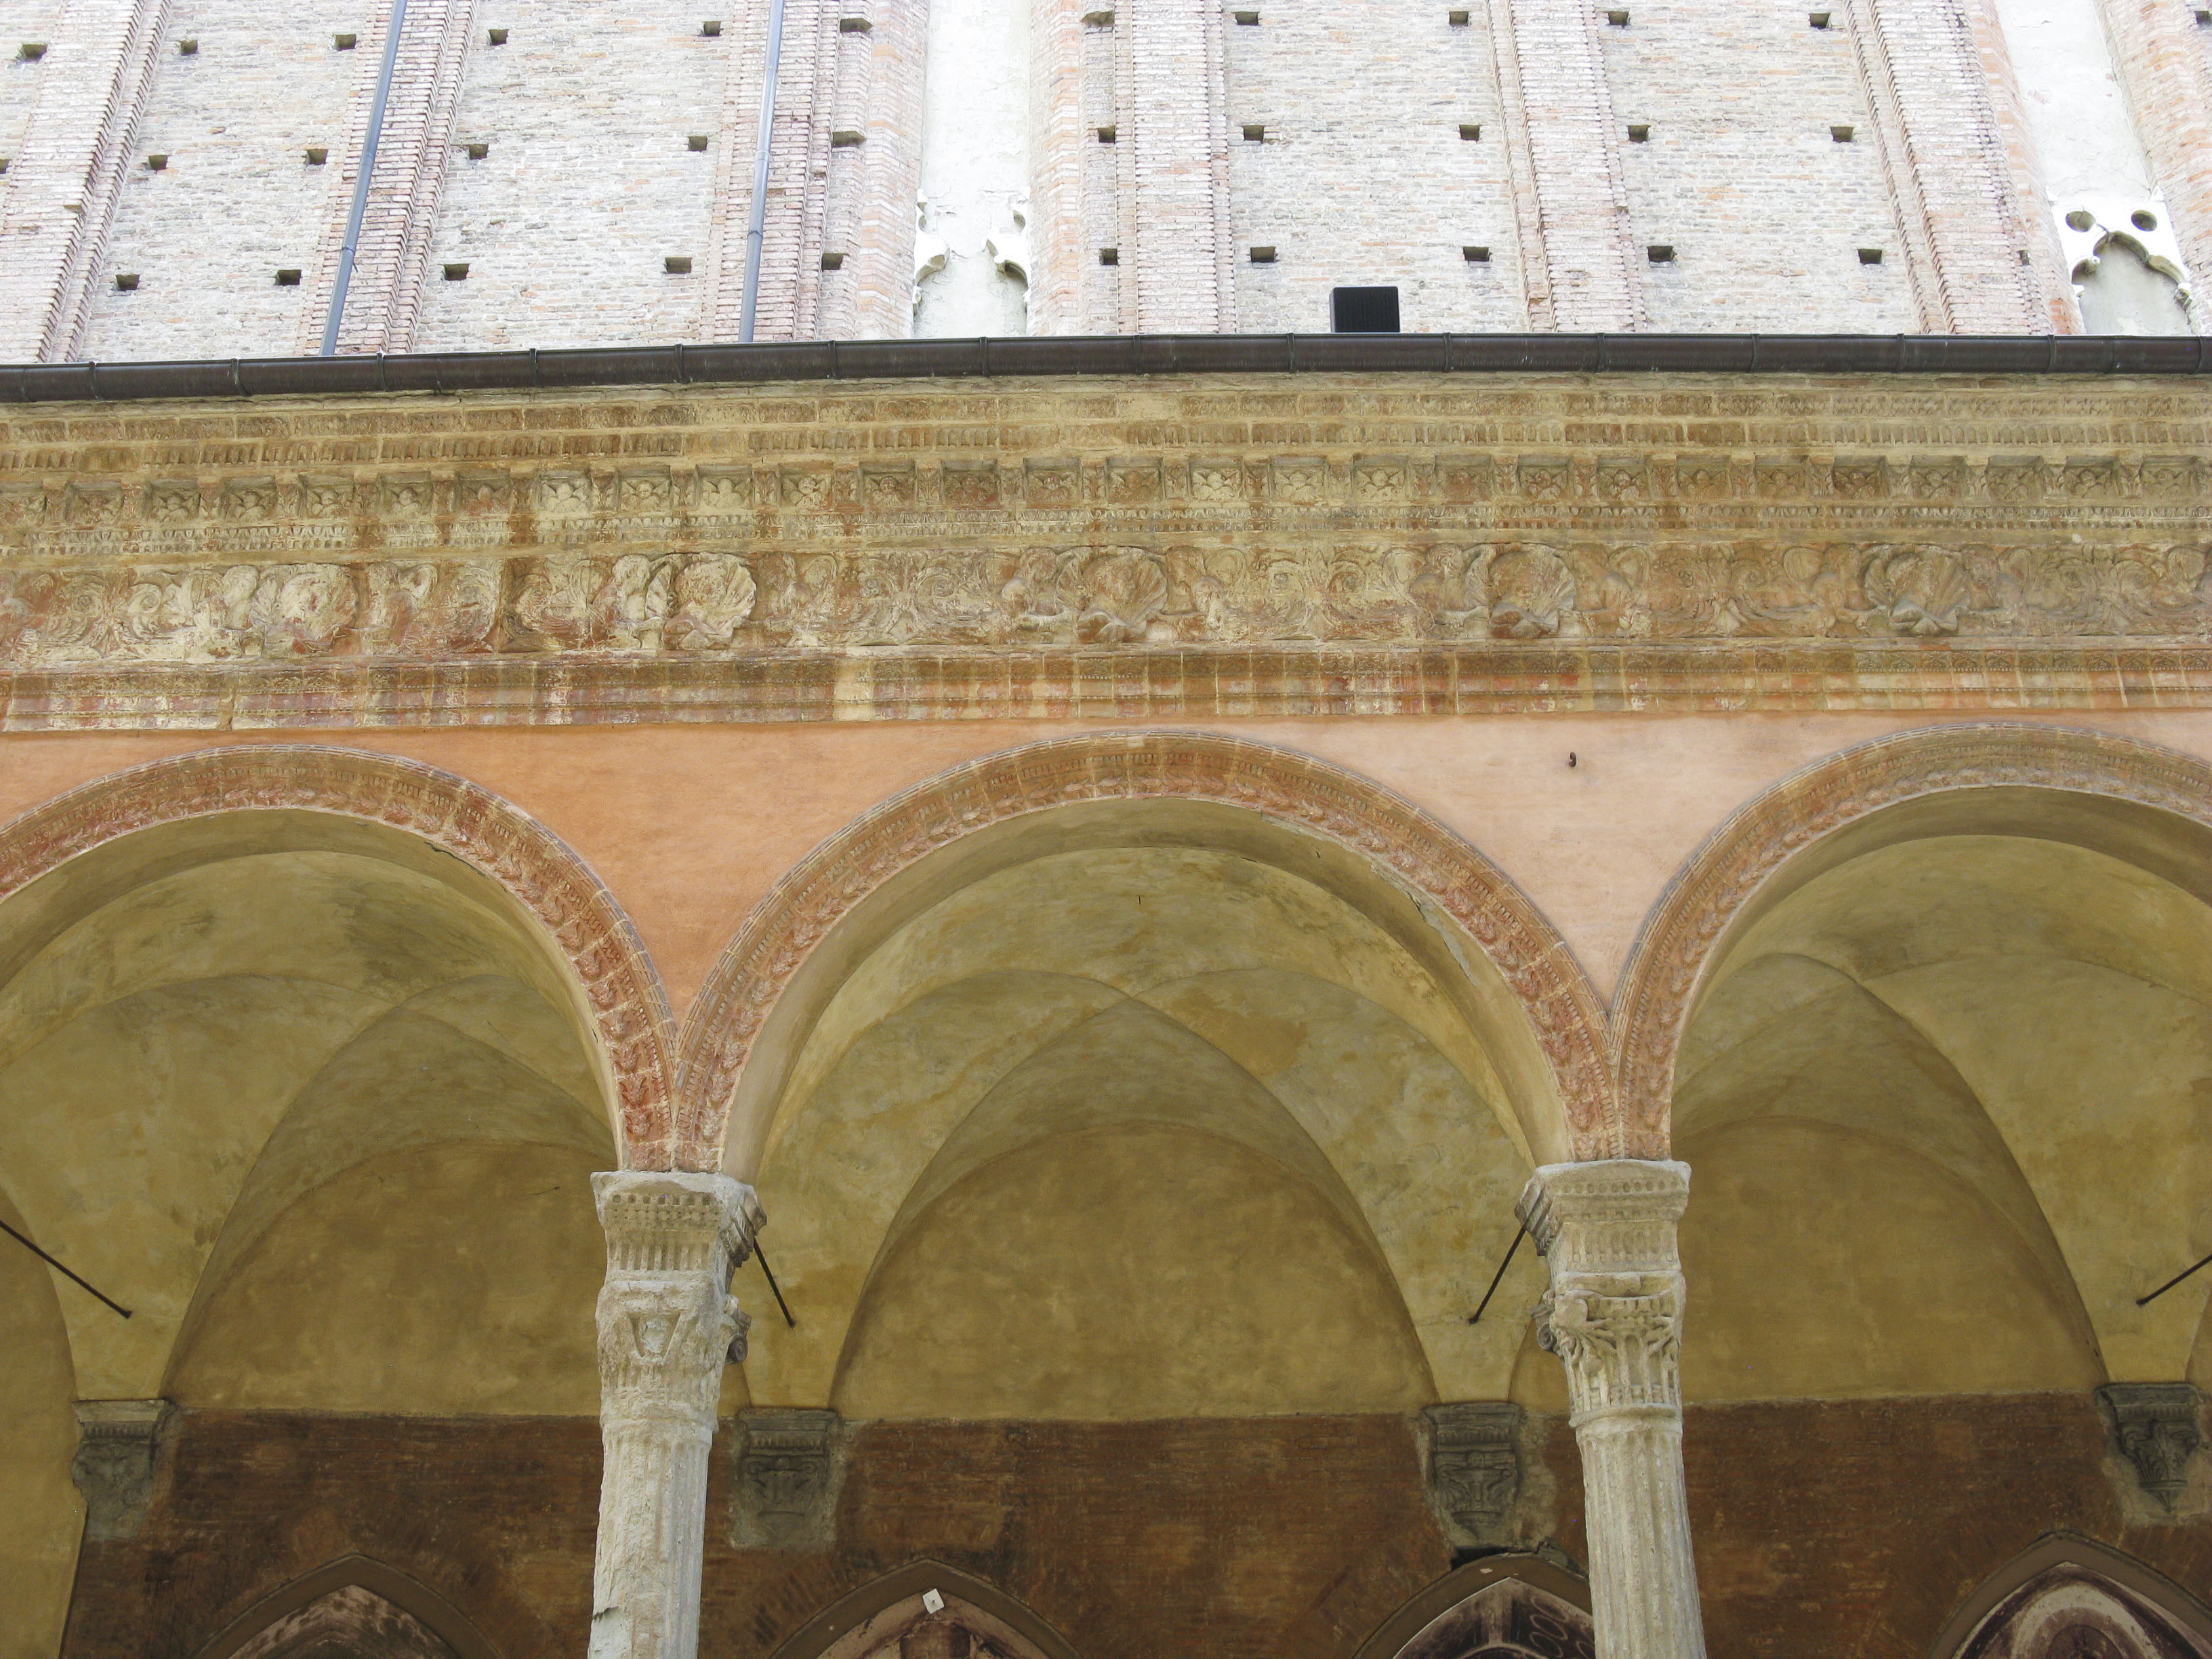 Chiesa di S. Giacomo Maggiore e portico (chiesa, conventuale) - Bologna (BO) 